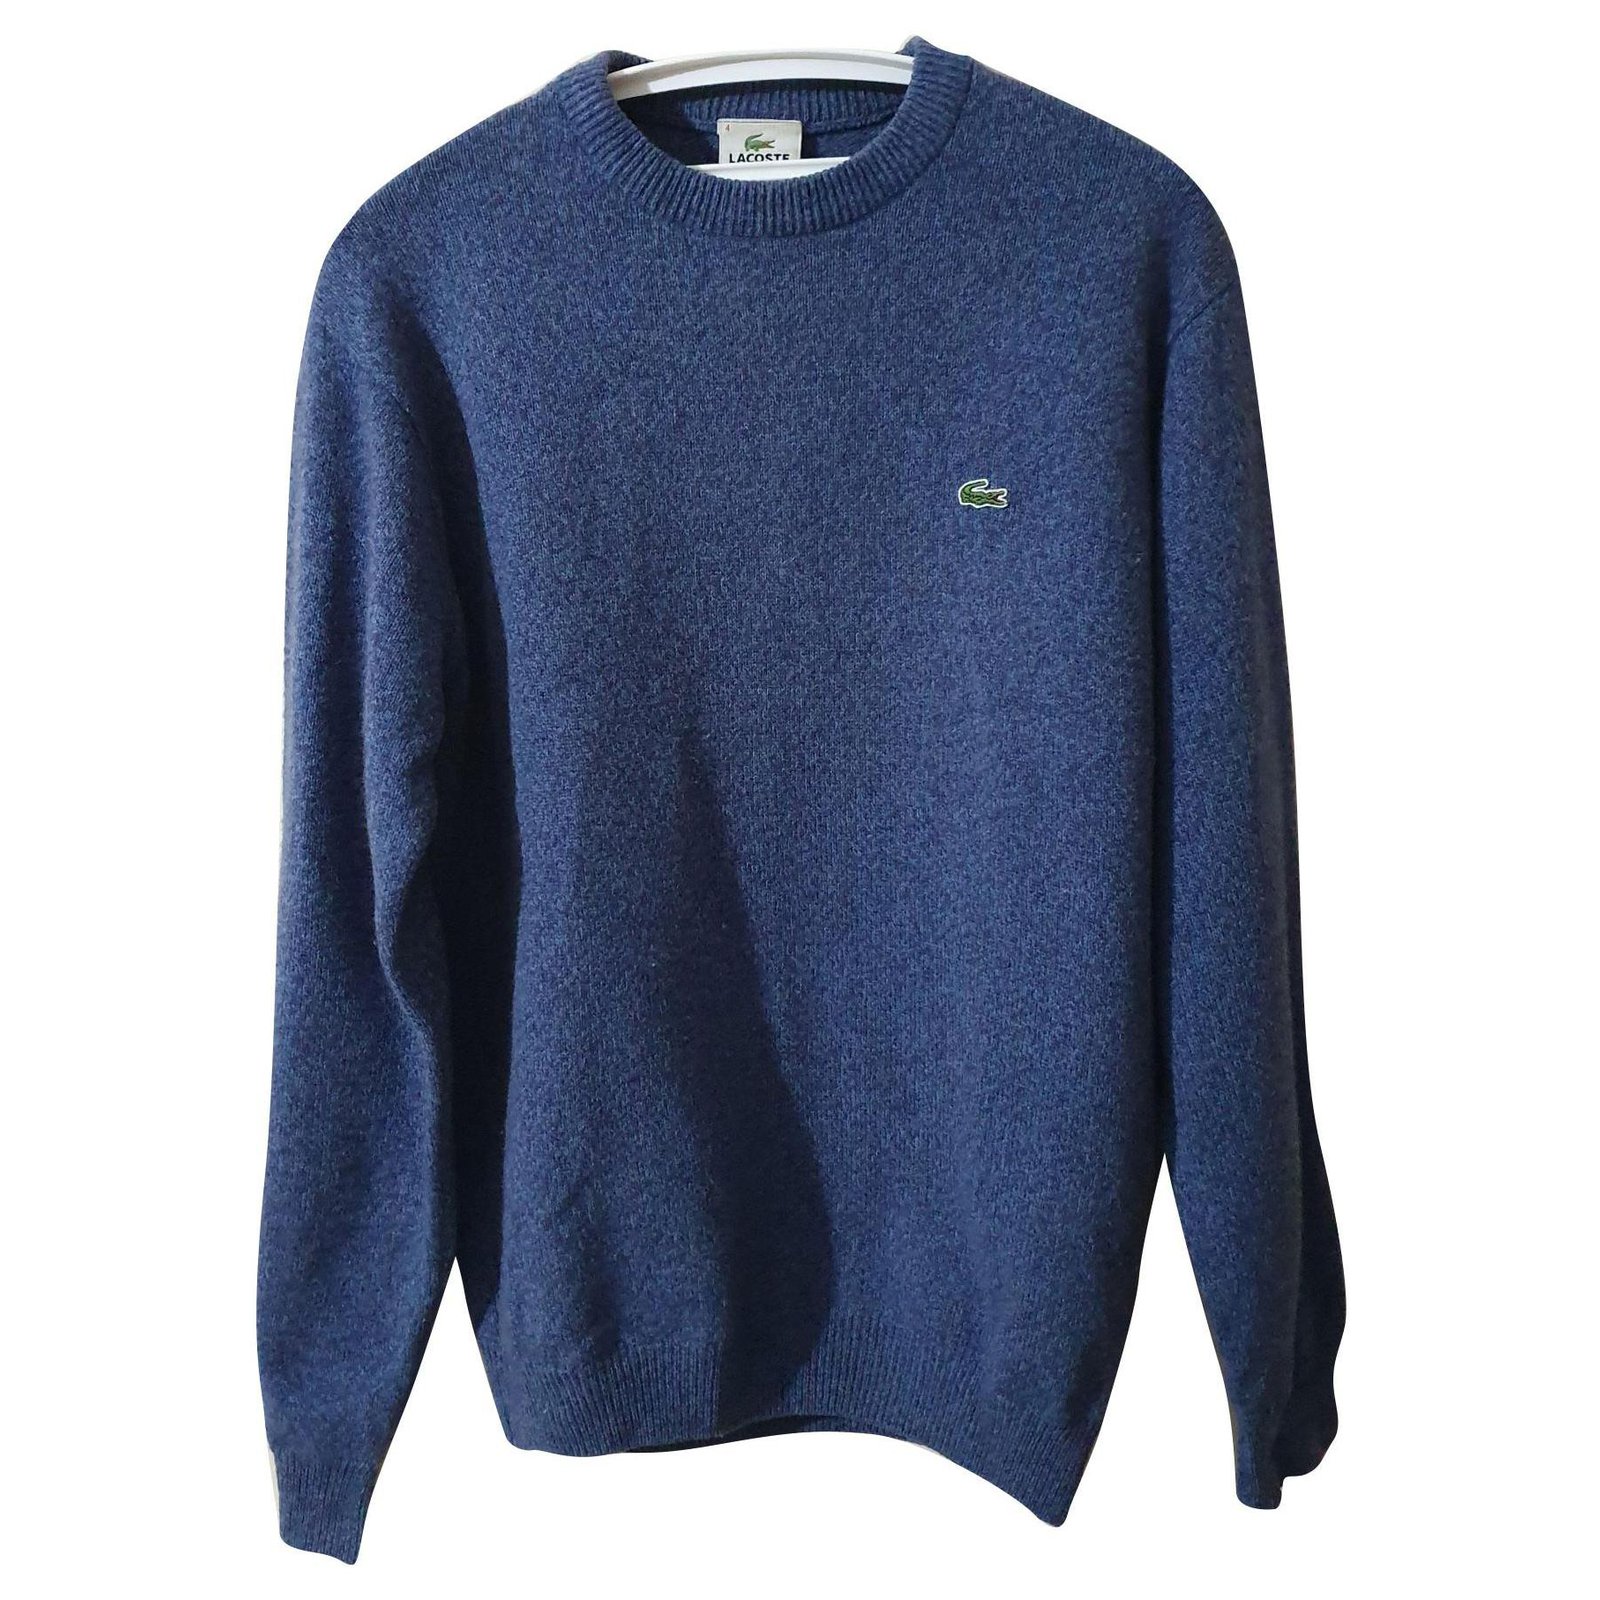 lacoste wool sweater